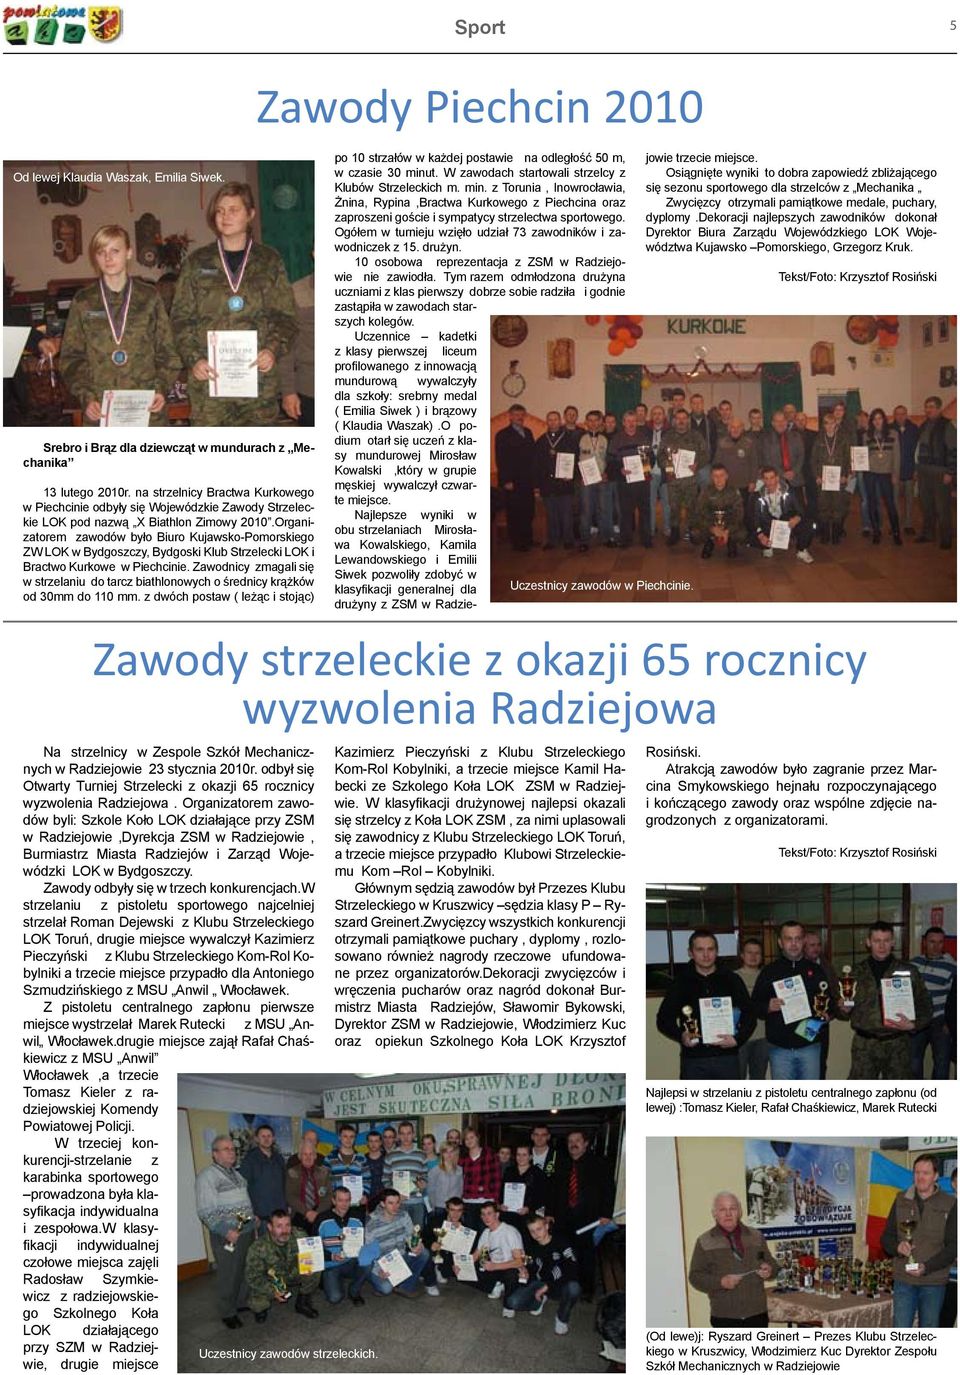 Organizatorem zawodów było Biuro Kujawsko-Pomorskiego ZW LOK w Bydgoszczy, Bydgoski Klub Strzelecki LOK i Bractwo Kurkowe w Piechcinie.